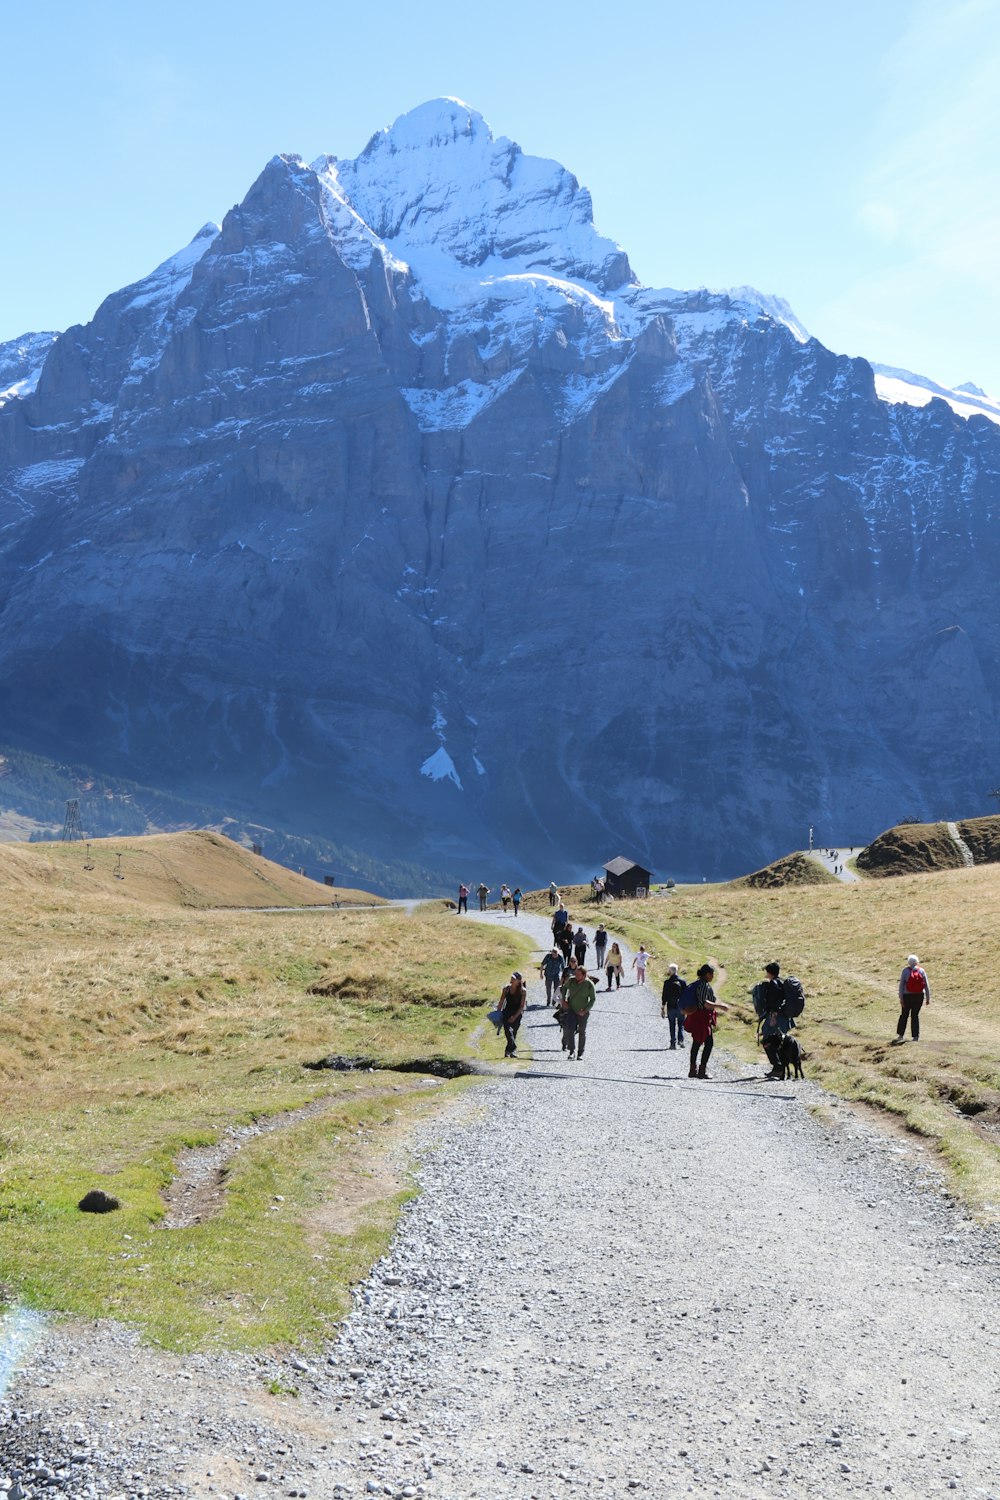 Un grupo de personas caminando por un camino de tierra frente a una gran montaña